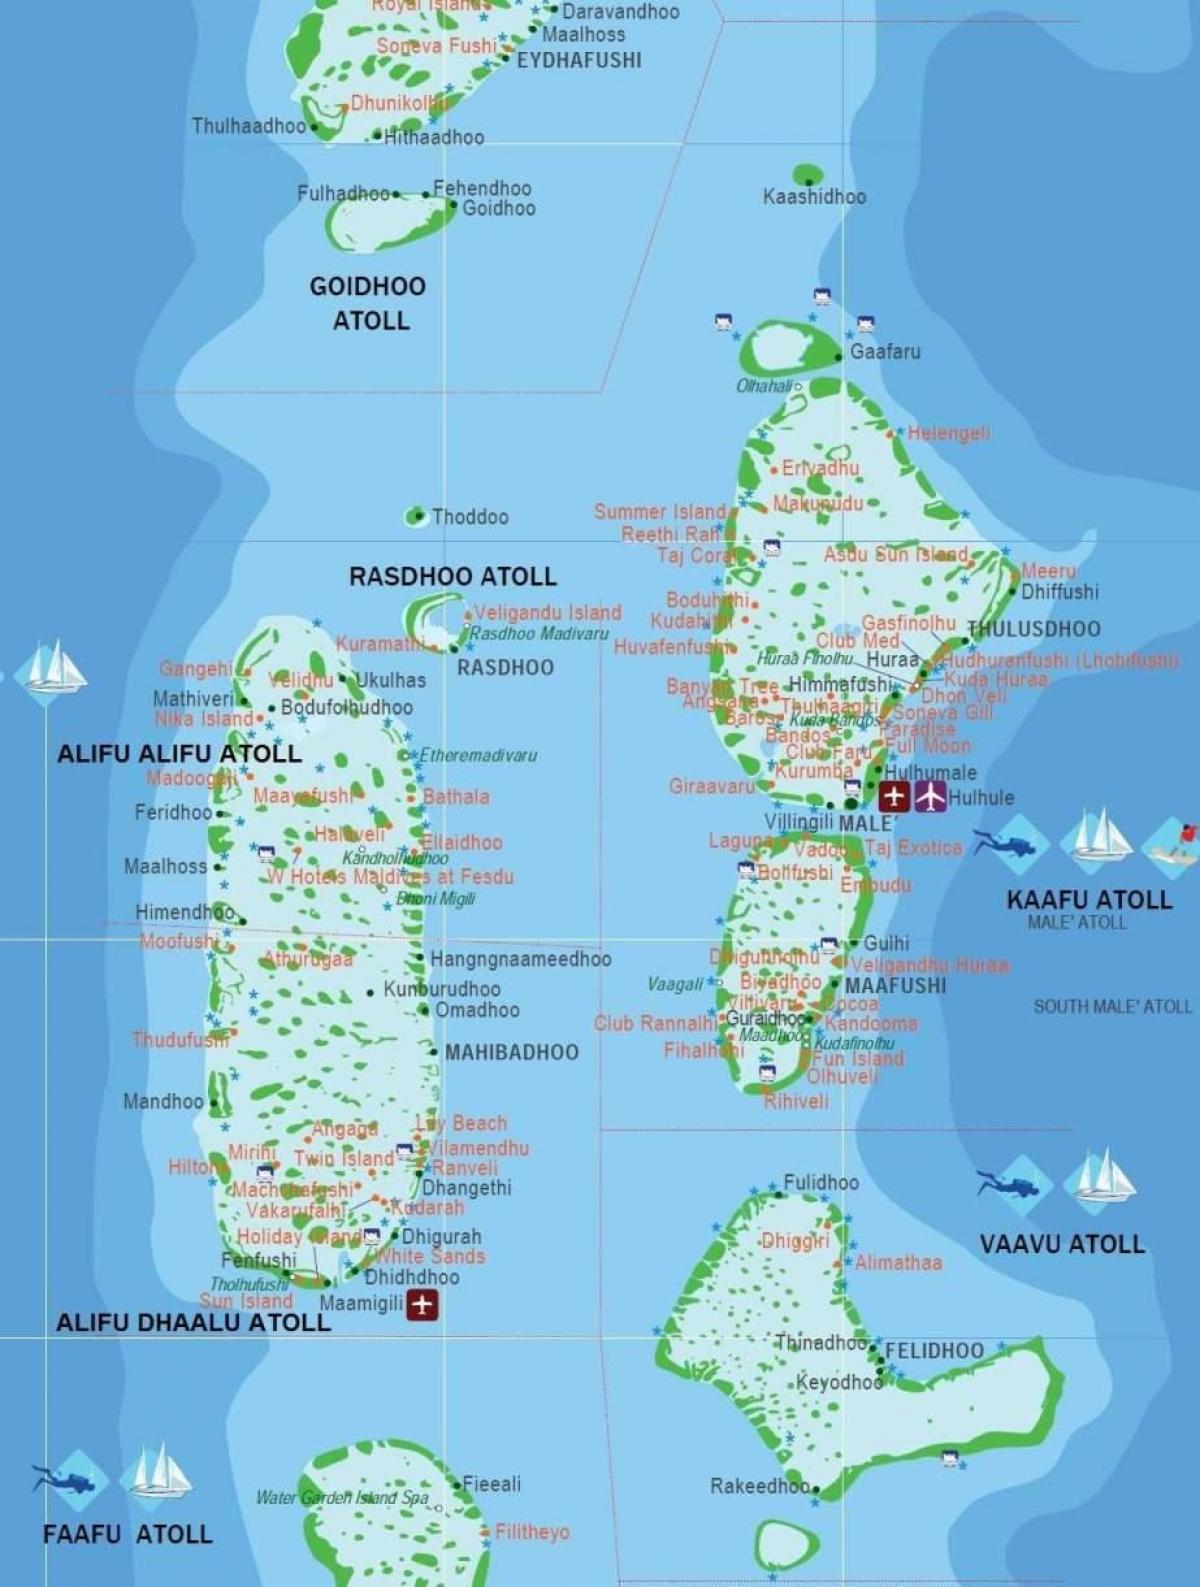 האיים המלדיביים במדינה מפת העולם